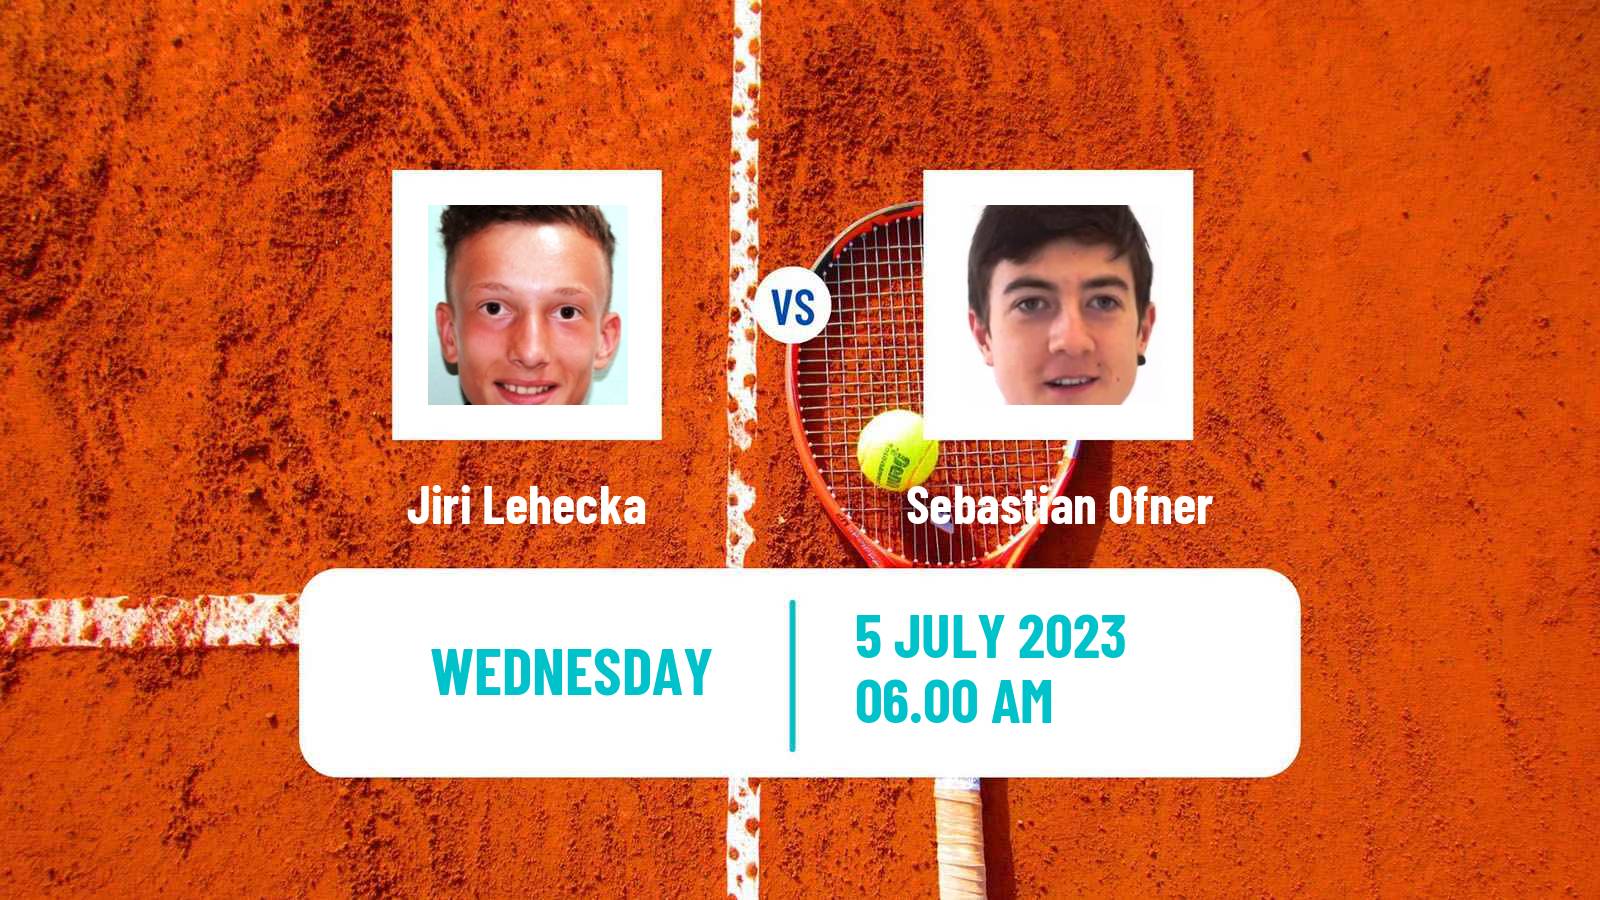 Tennis ATP Wimbledon Jiri Lehecka - Sebastian Ofner